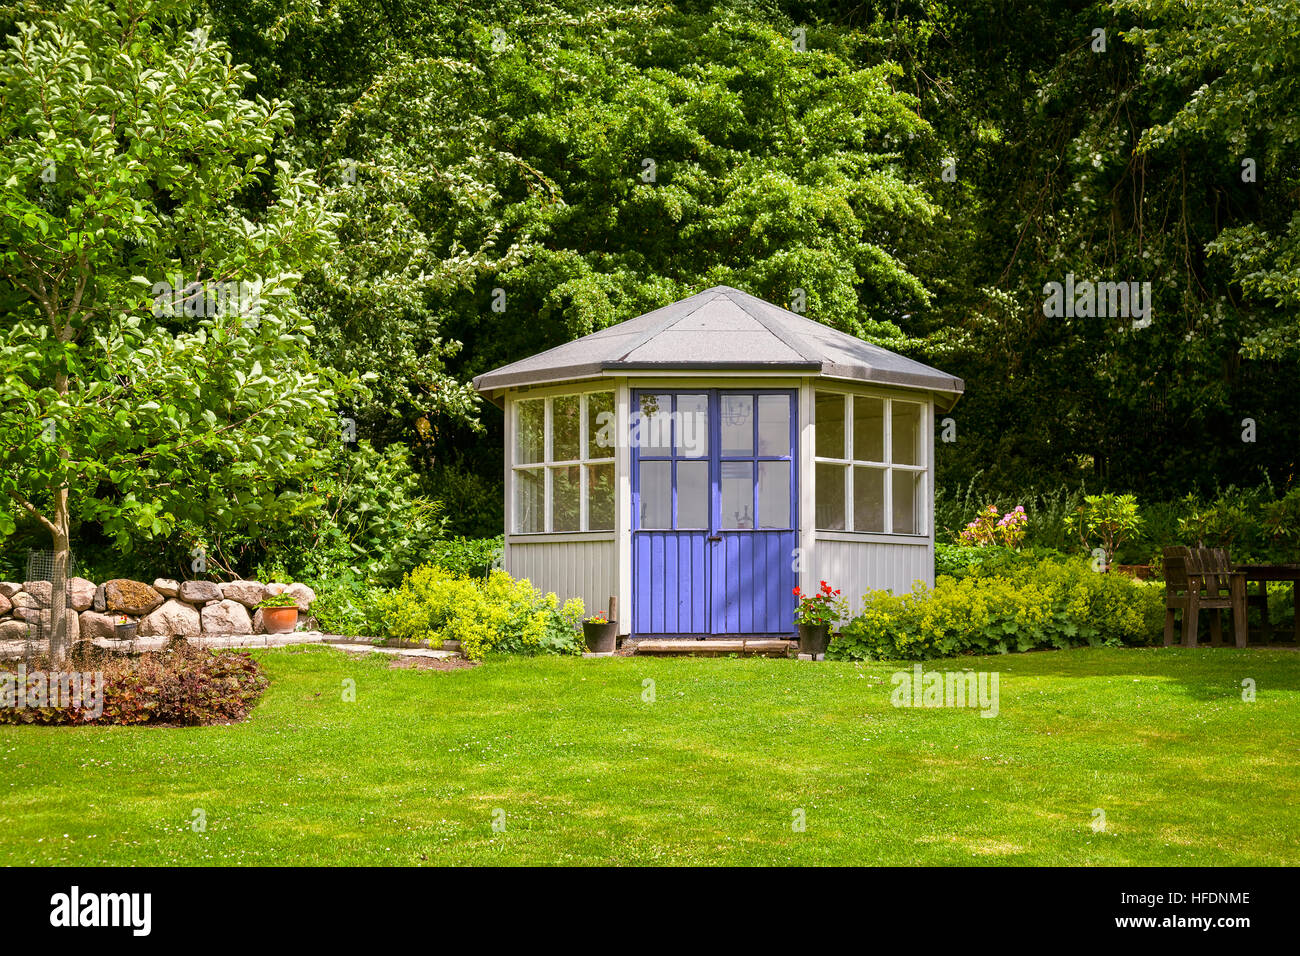 Bild von Pavillon Haus in einem grünen Garten hinter dem Haus. Stockfoto